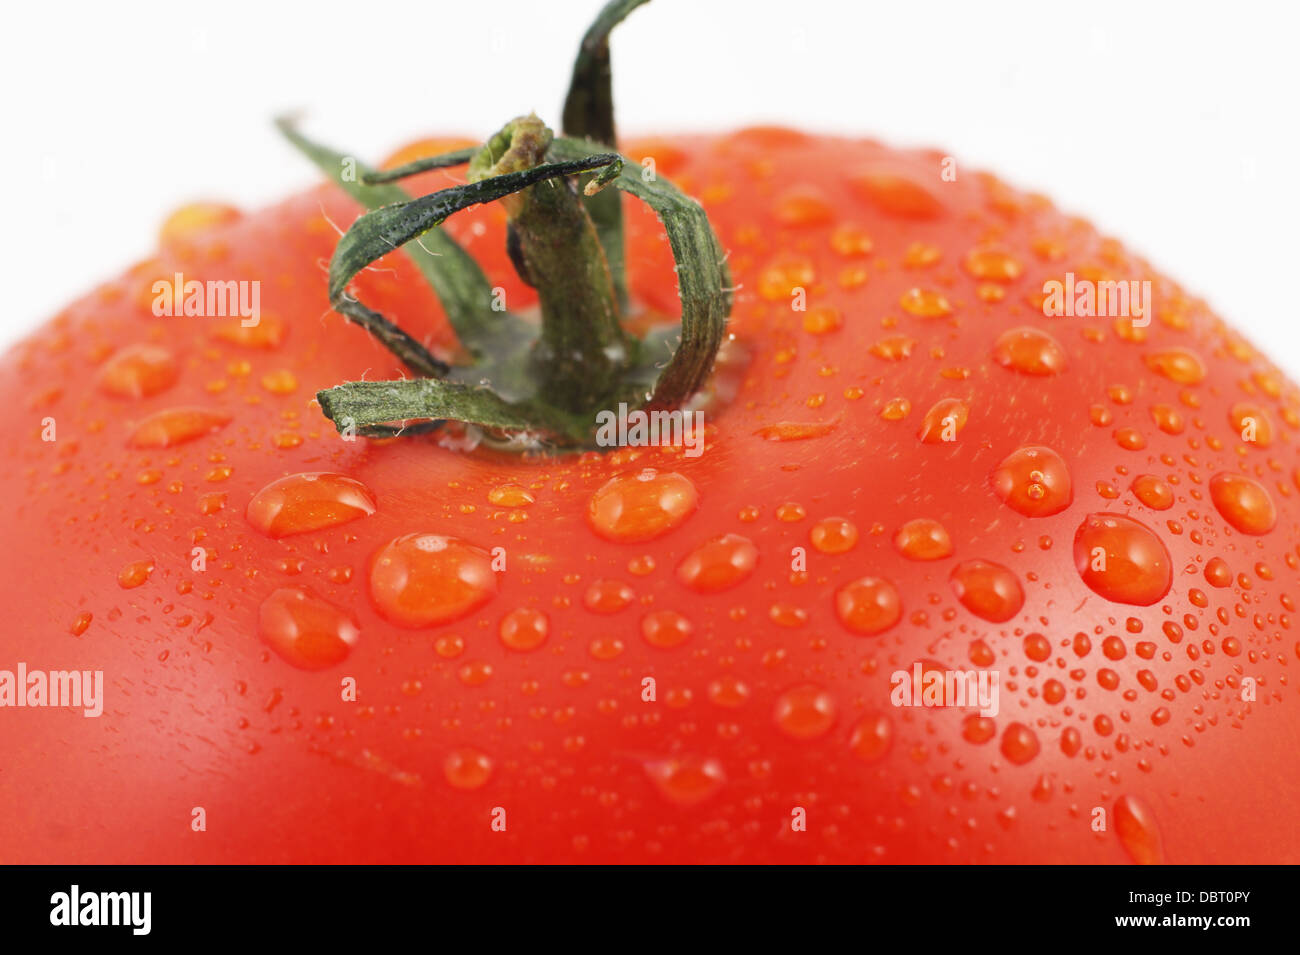 Gros plan de tomate mûre Banque D'Images